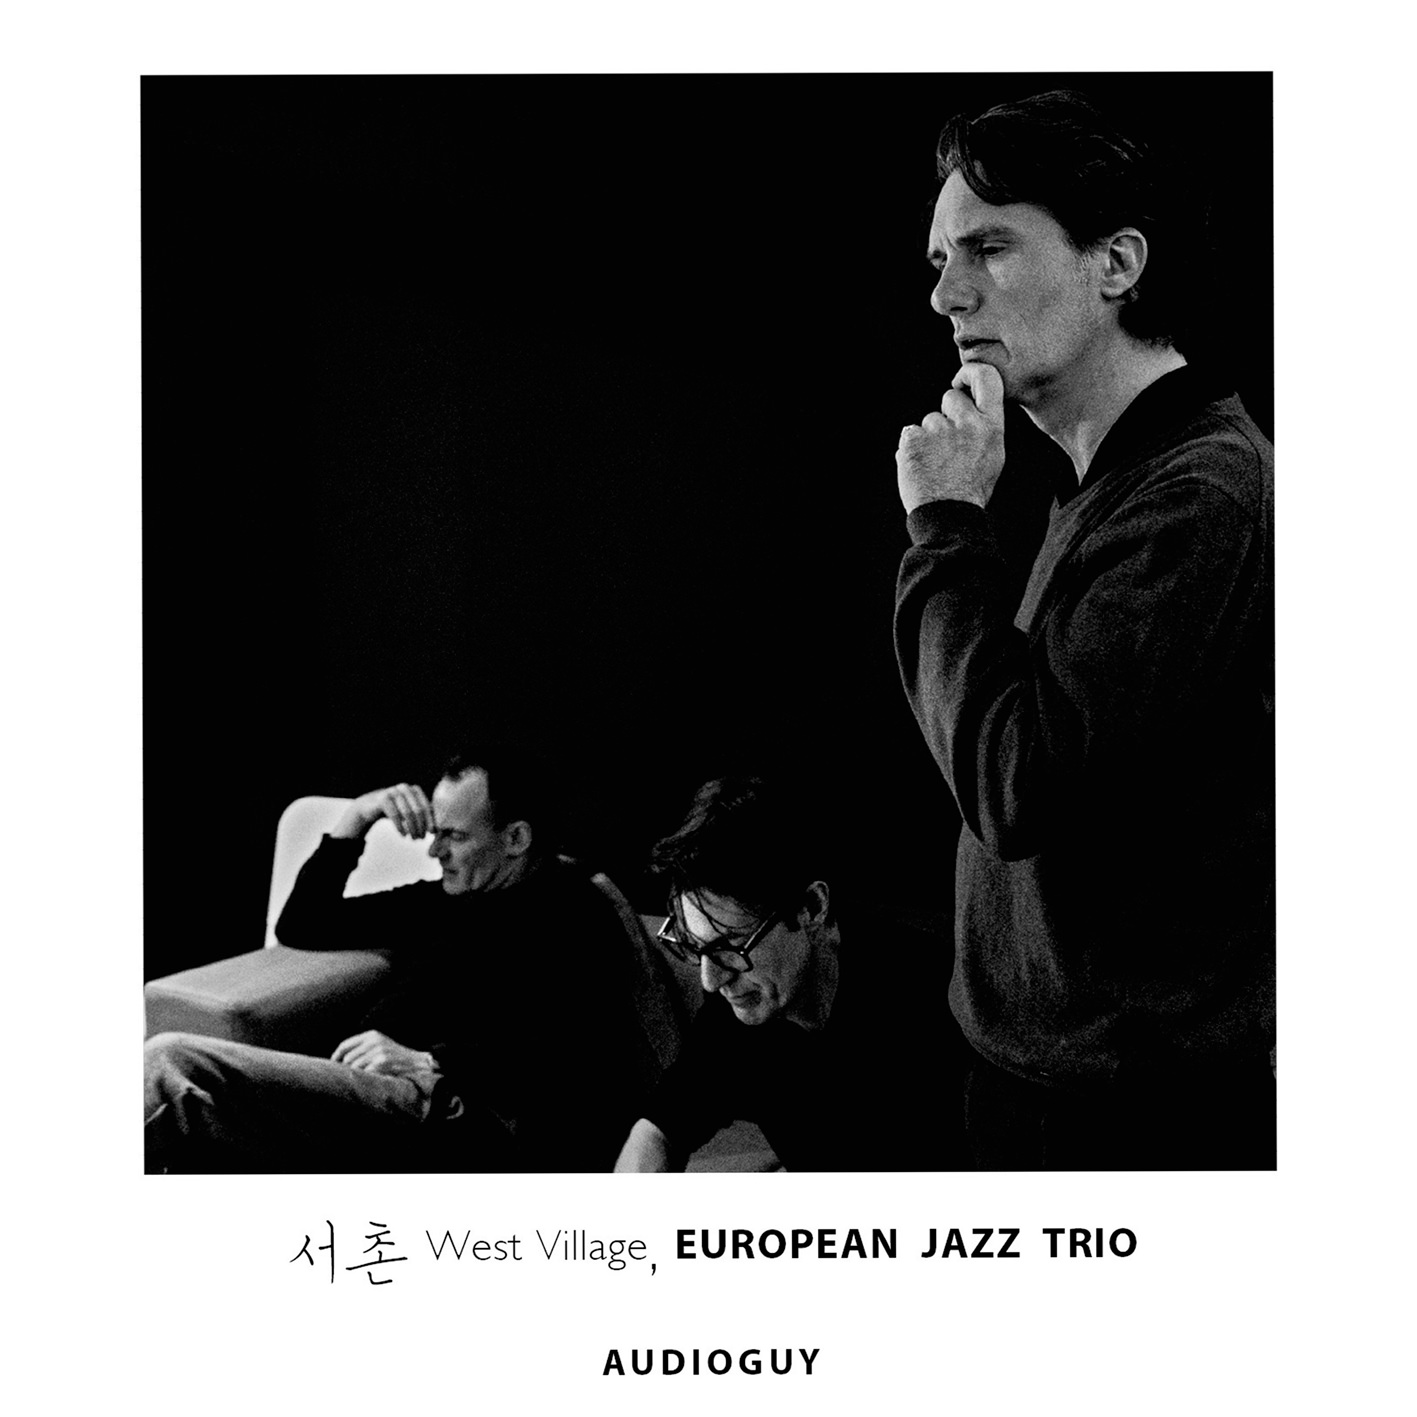 European Jazz Trio – West Village (2018) [AcousticSounds FLAC 24bit/96kHz]